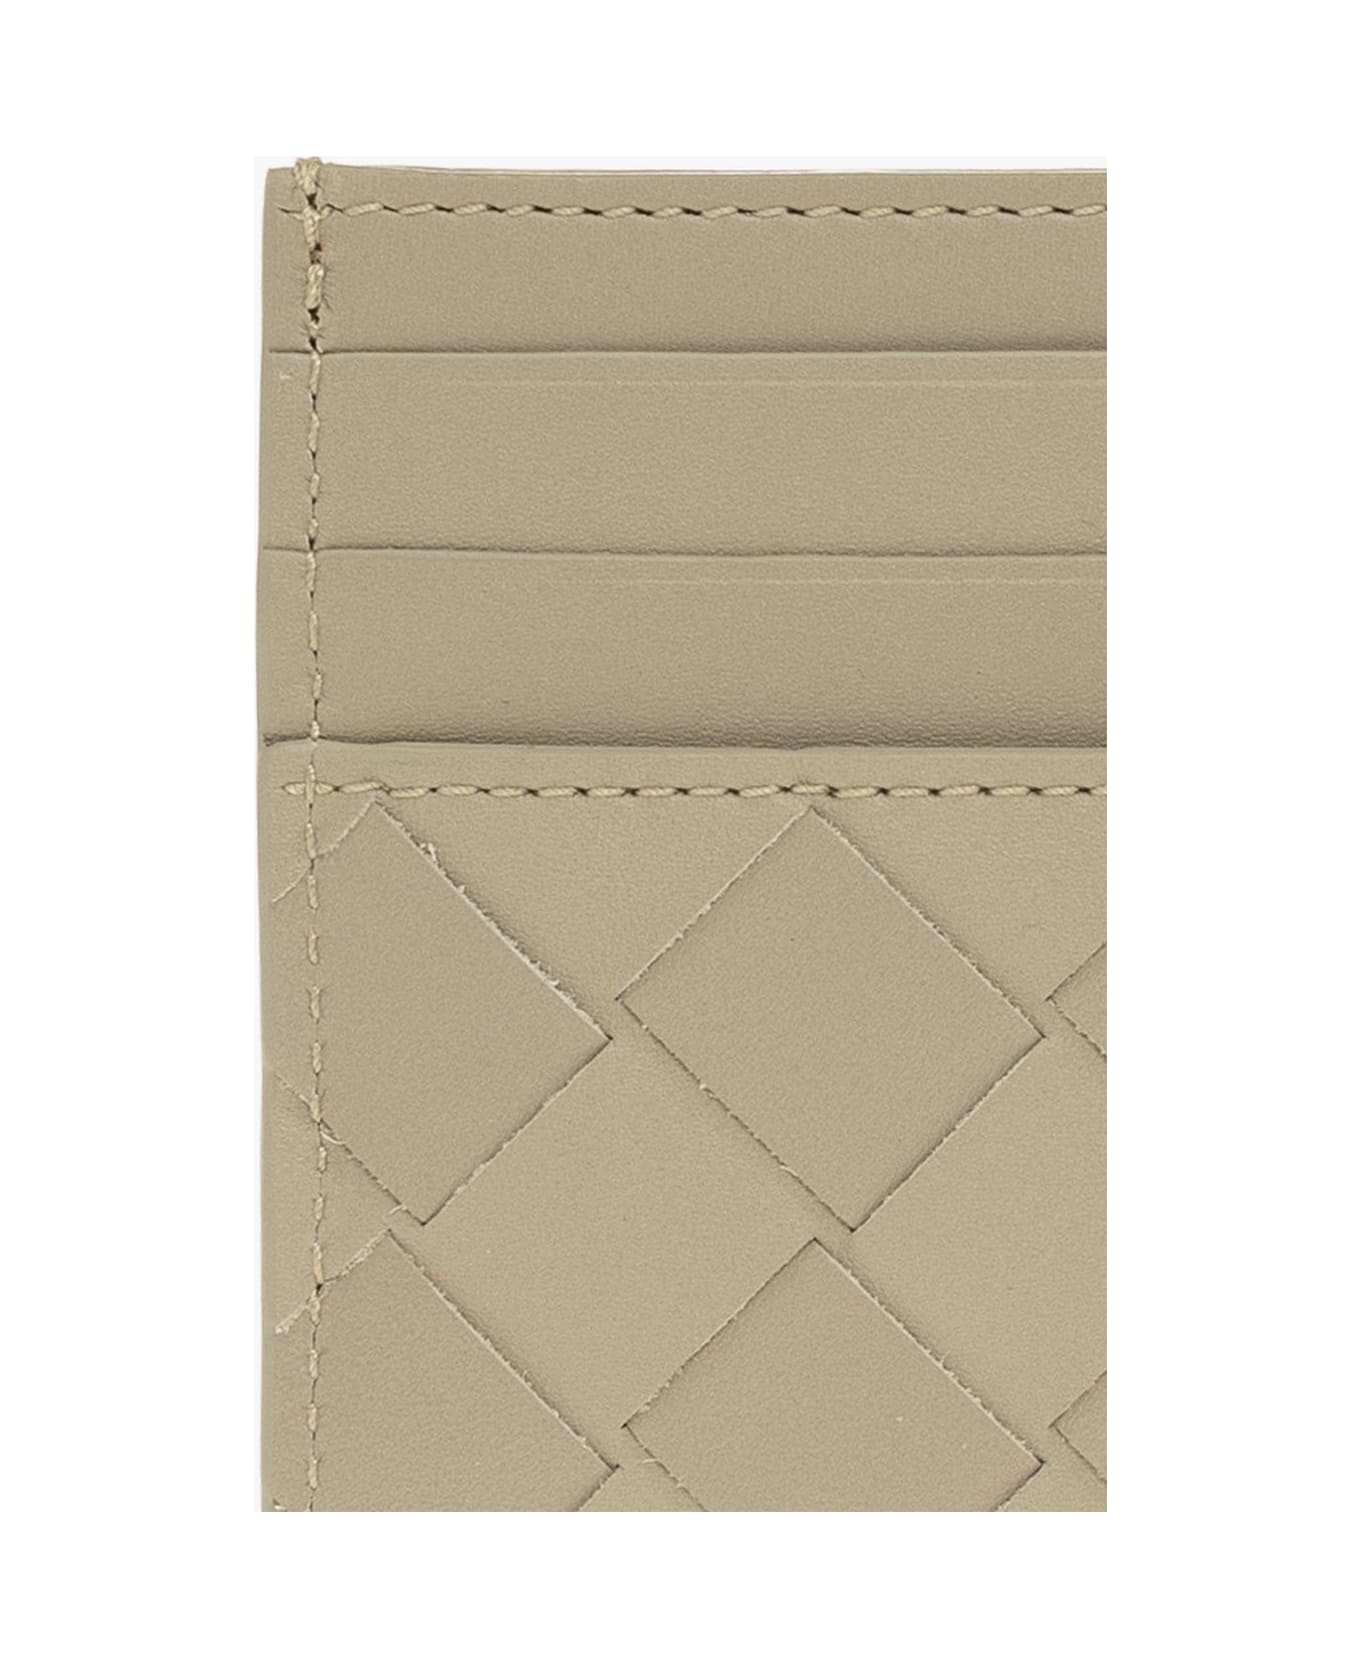 Bottega Veneta Leather Card Case - BEIGE